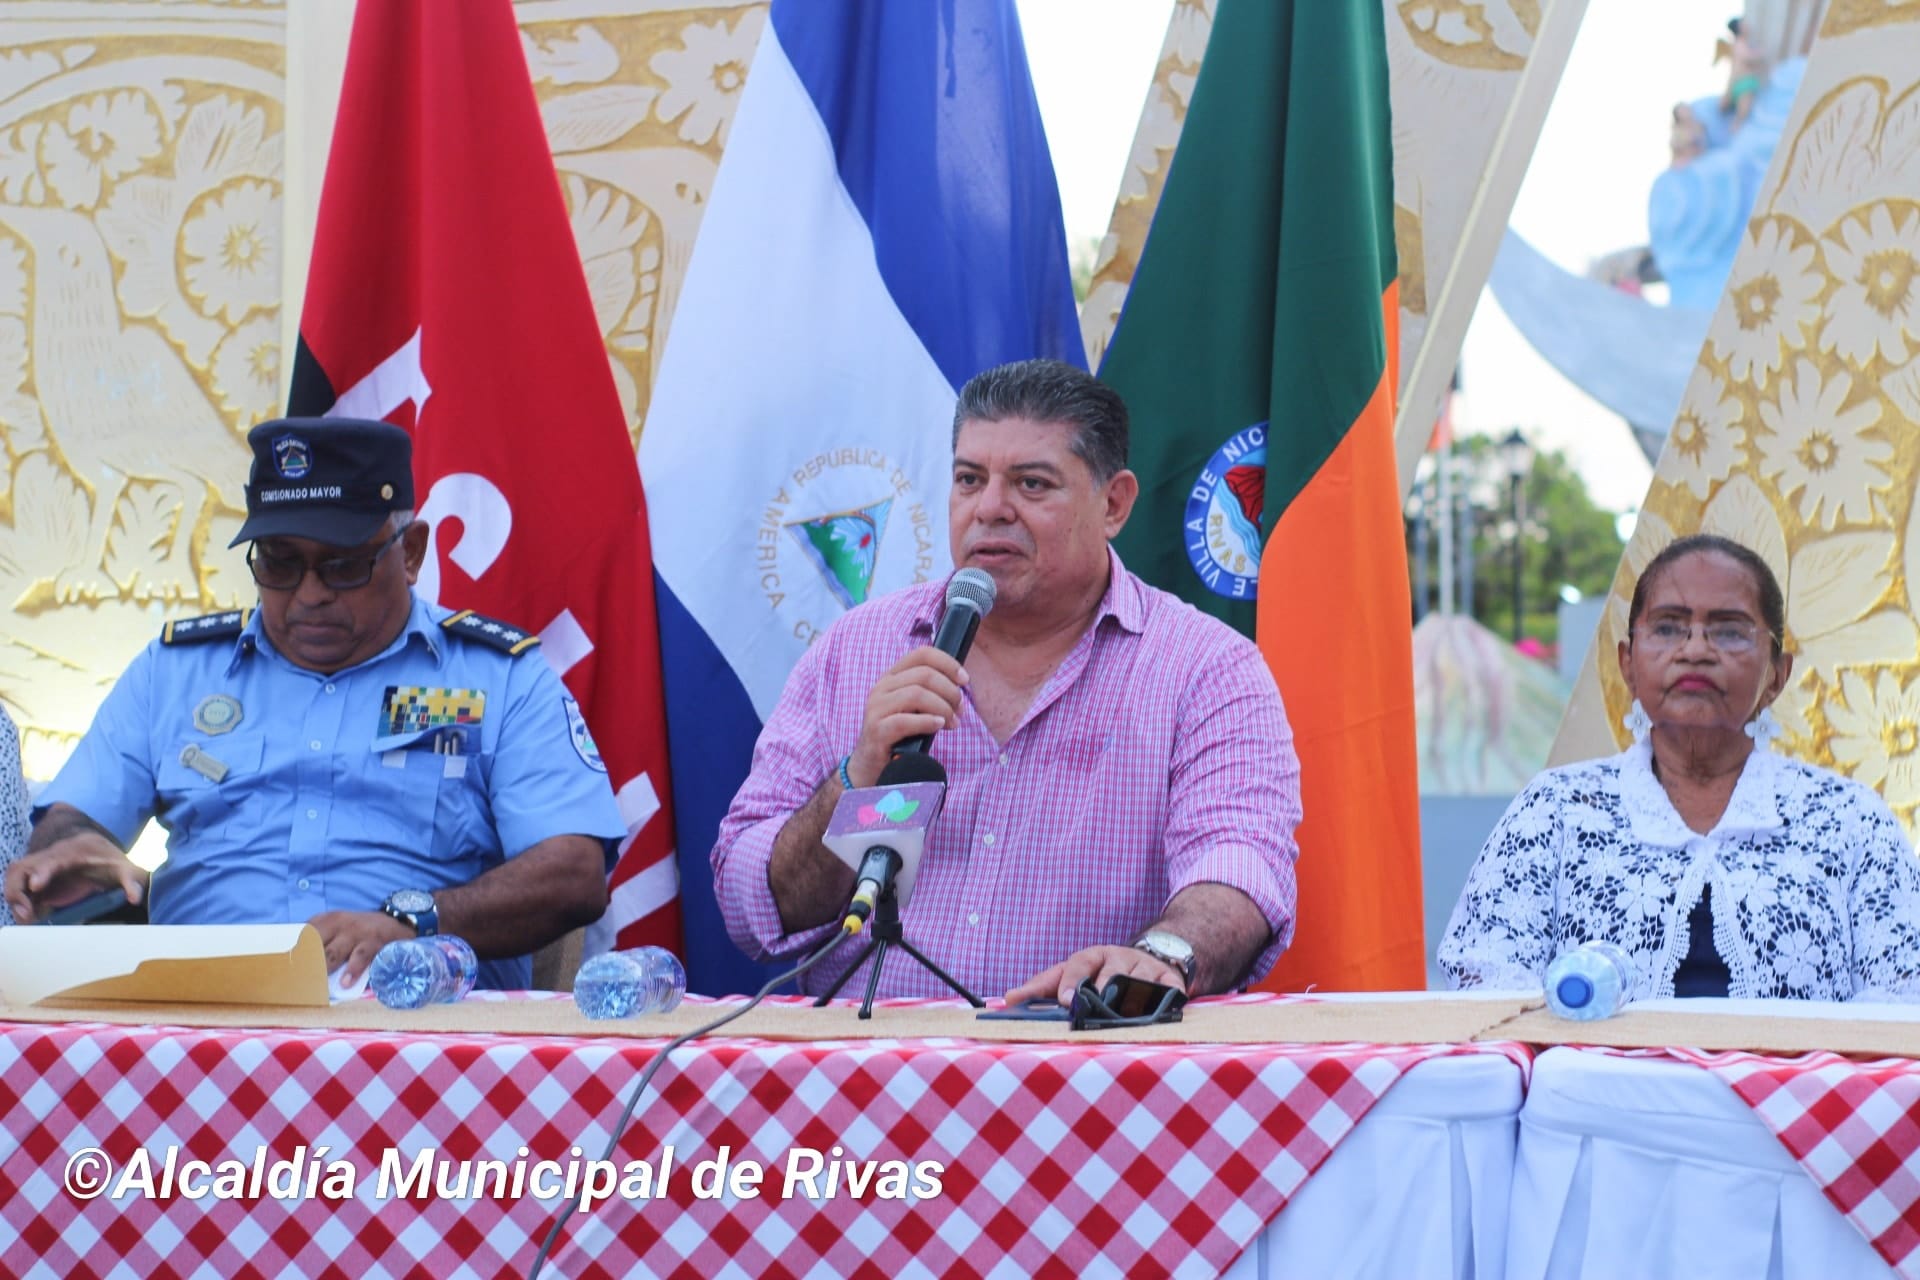 Regime arrests the mayor of the FSLN in Rivas, Wilfredo López